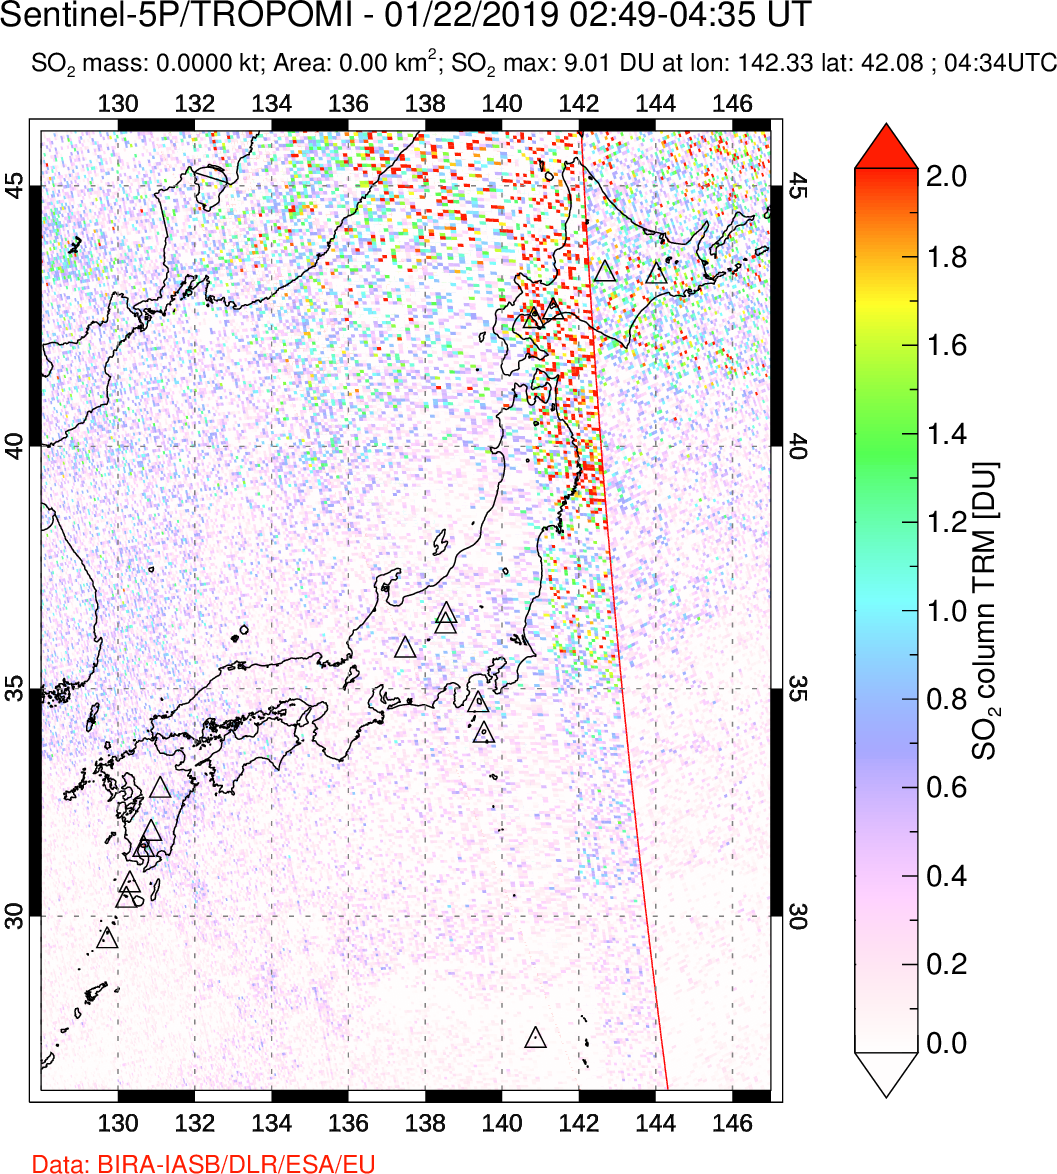 A sulfur dioxide image over Japan on Jan 22, 2019.